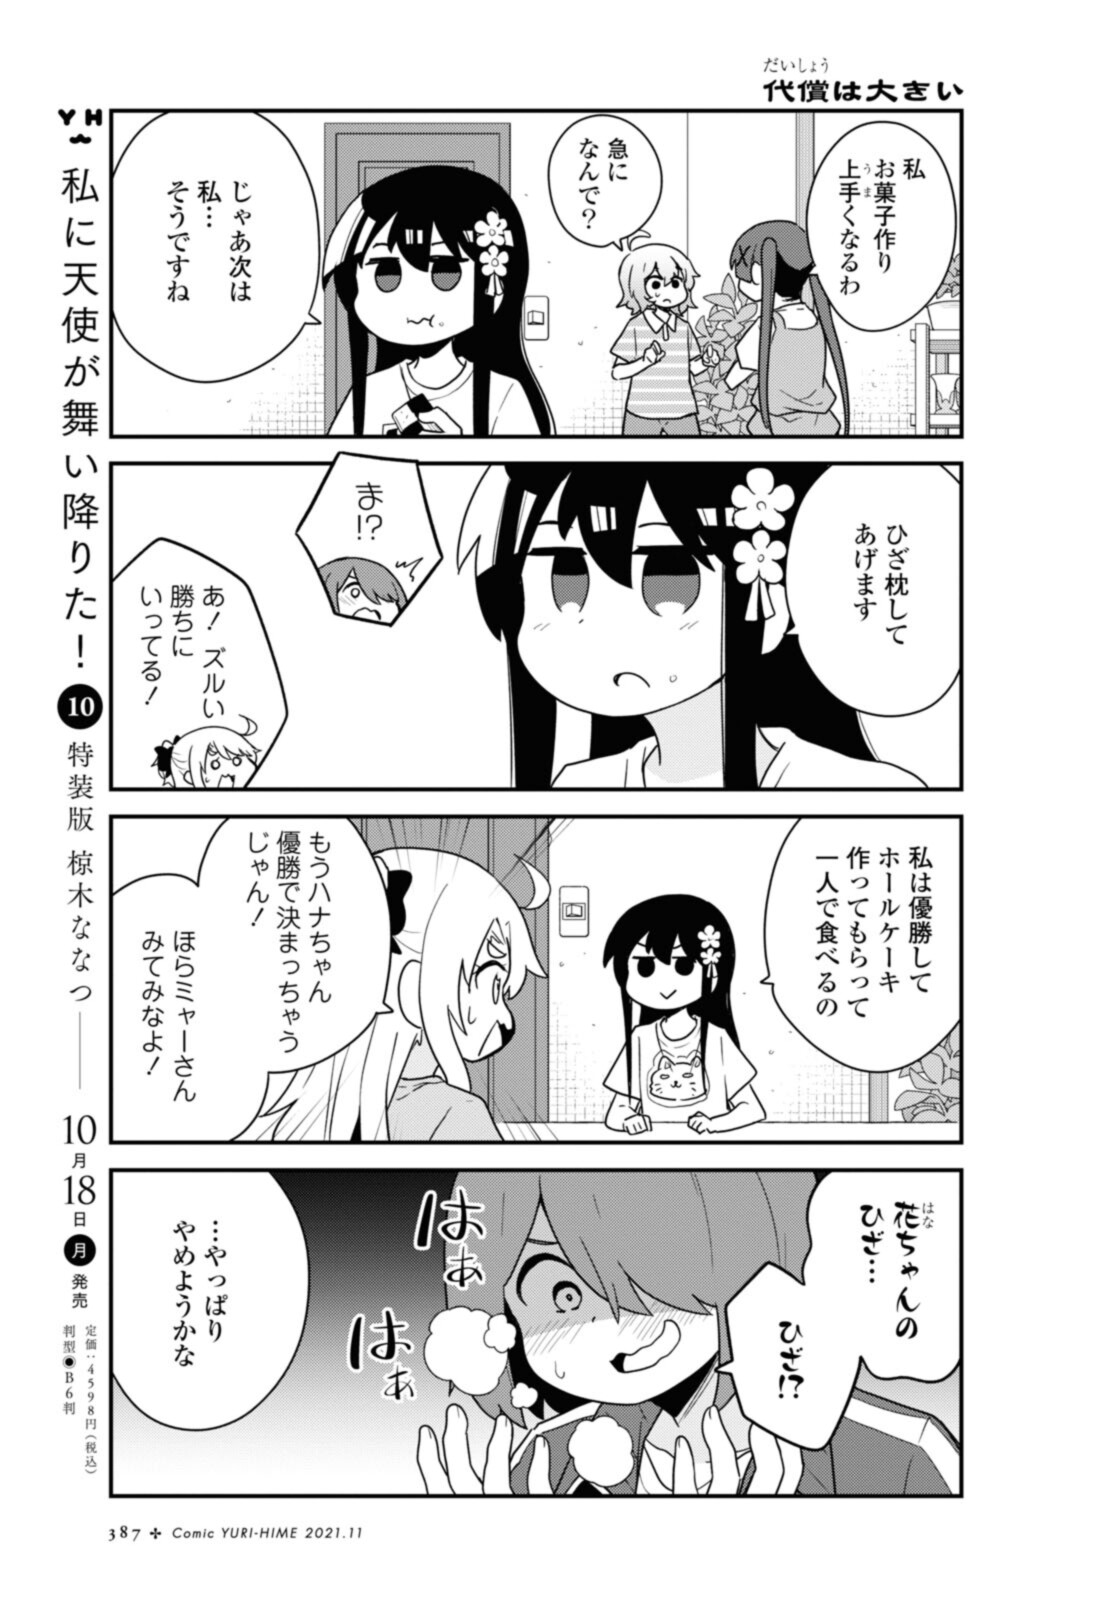 Watashi ni Tenshi ga Maiorita! - Chapter 87.1 - Page 11